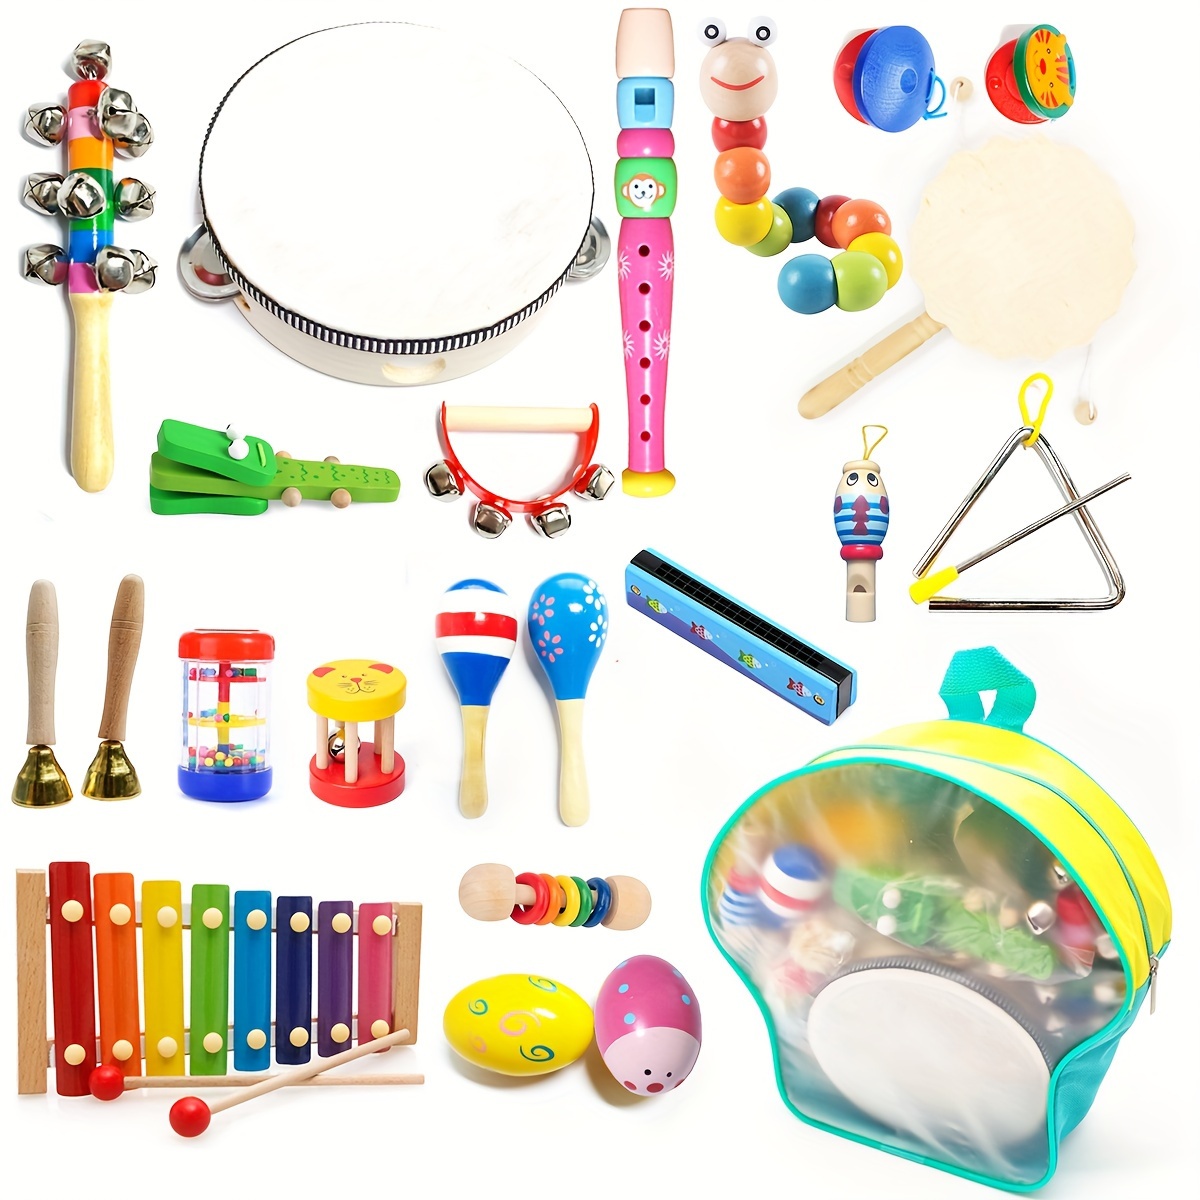 Instrumentos musicales para niños pequeños, juguetes musicales para bebés